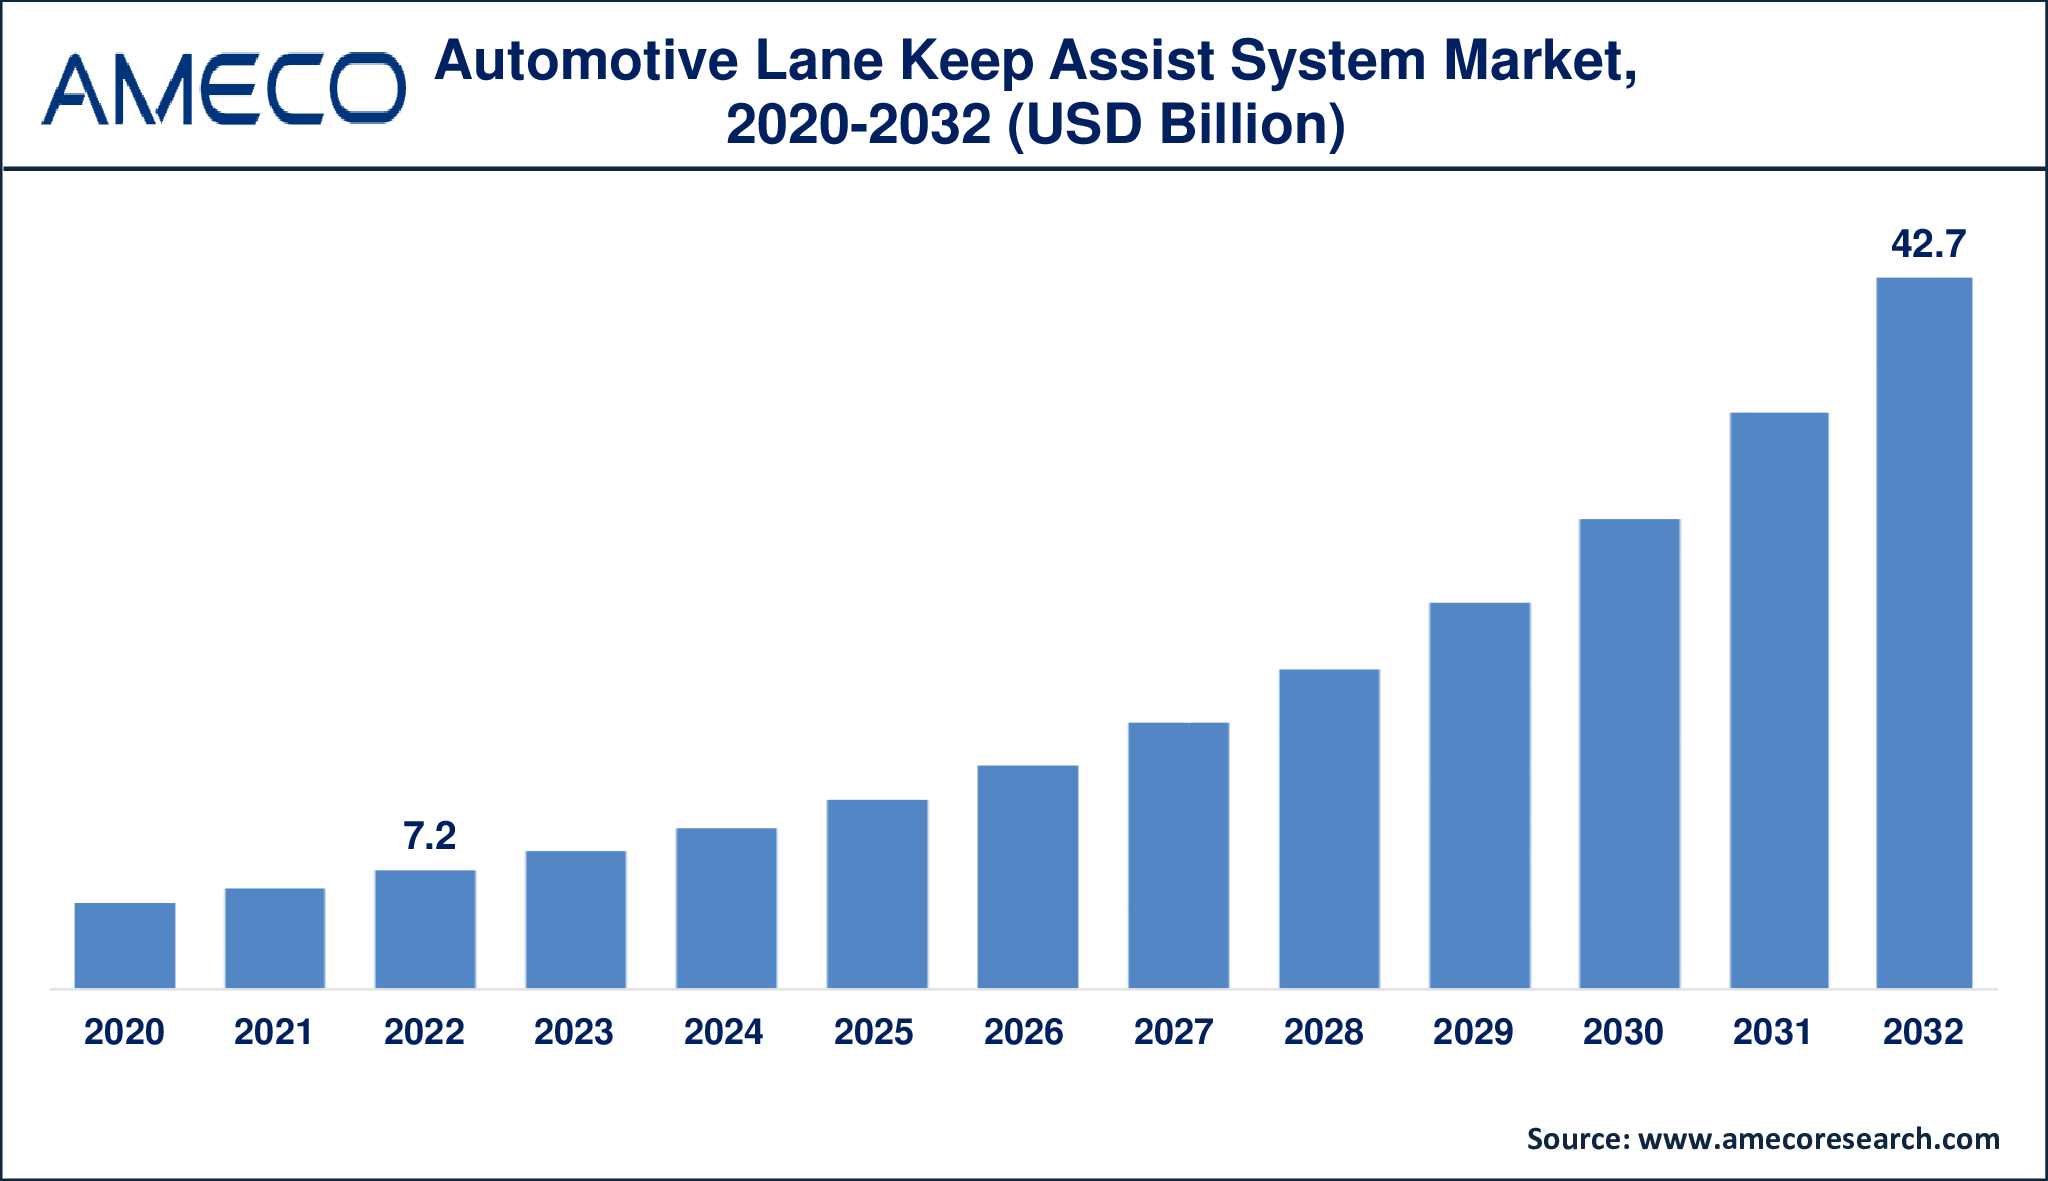 Automotive Lane Keep Assist System Market Dynamics